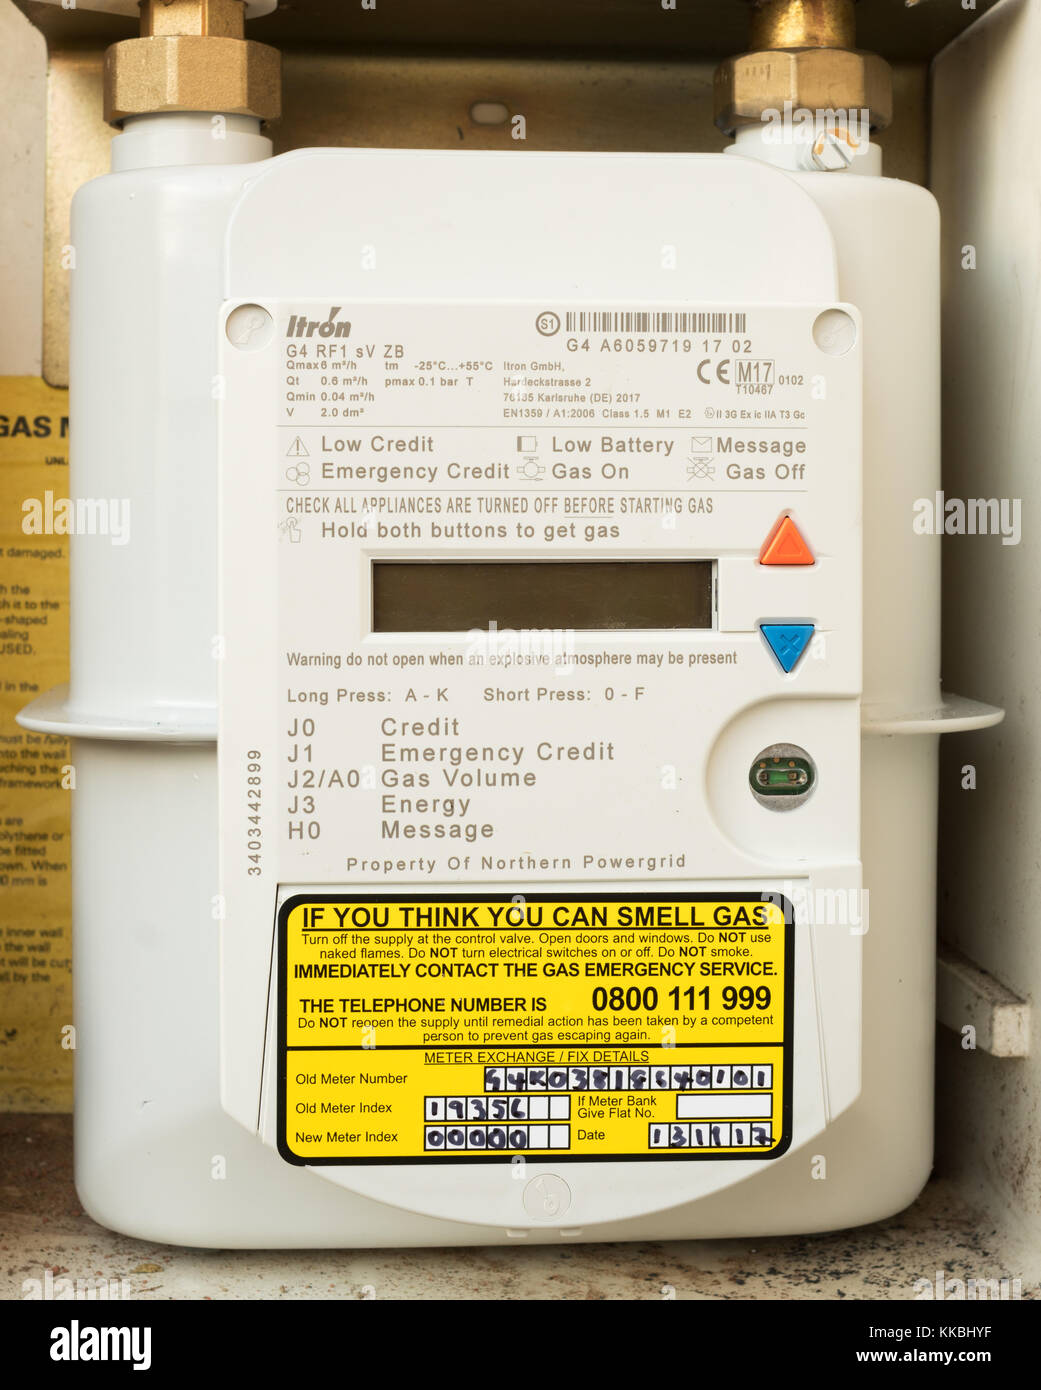 Smart gas meter Banque de photographies et d'images à haute résolution -  Alamy